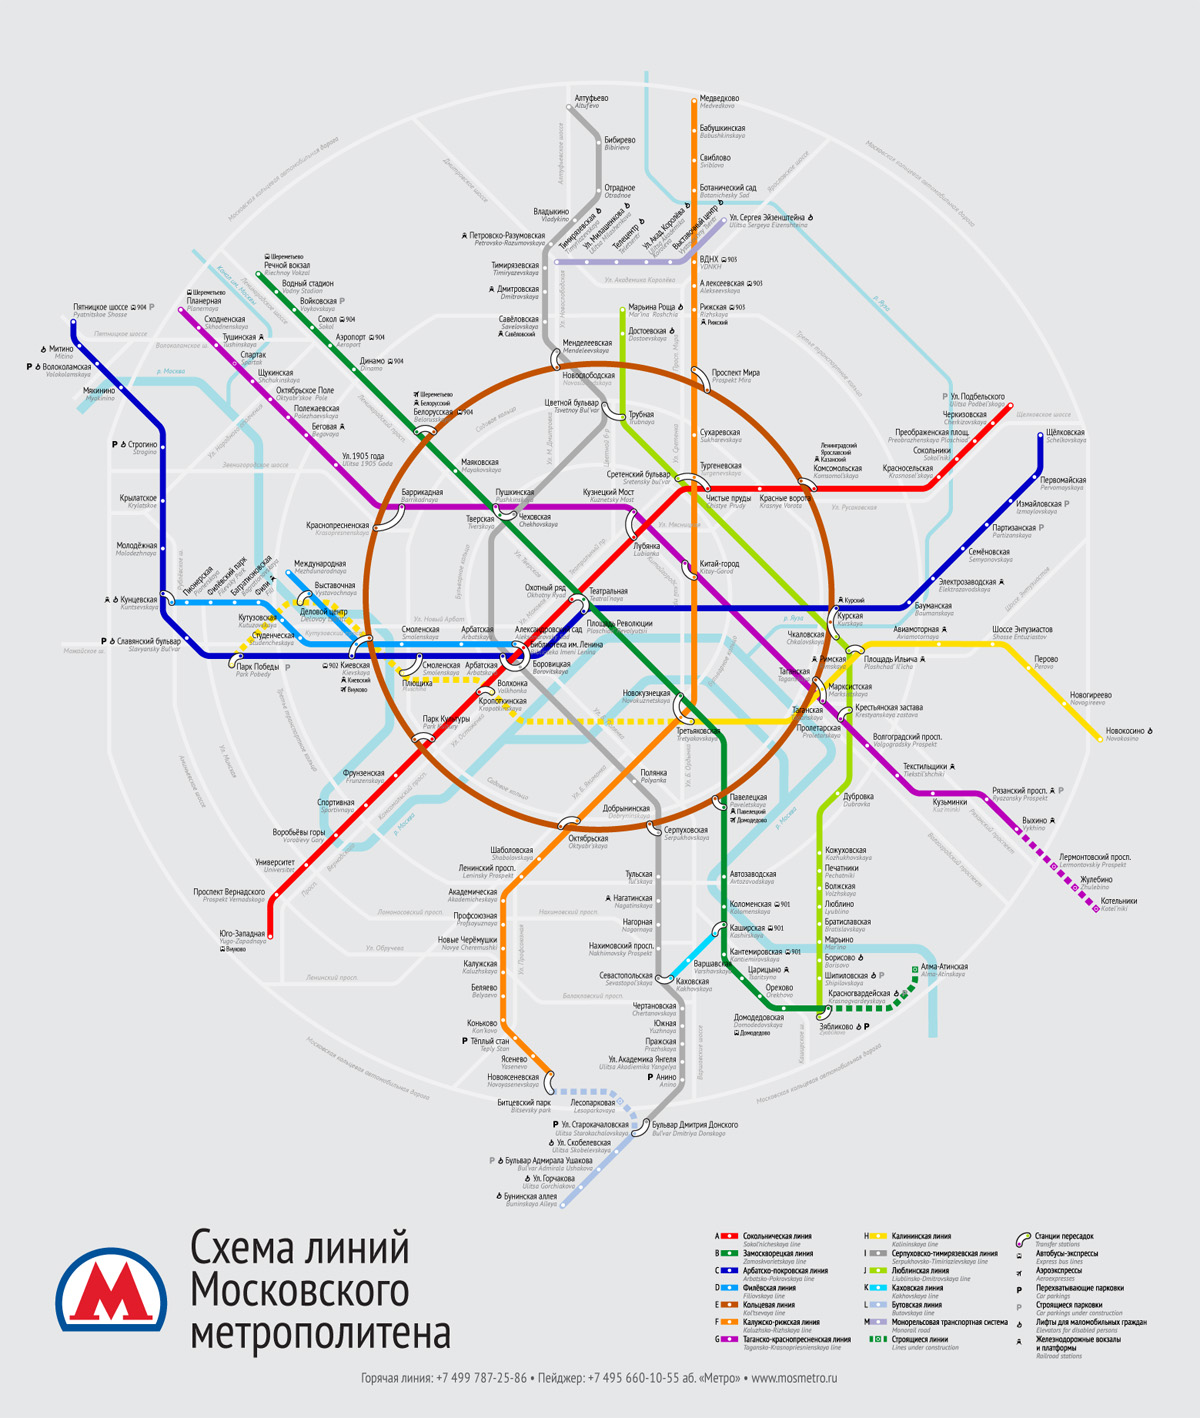 Конкурс на новую схему московского метро. Все работы